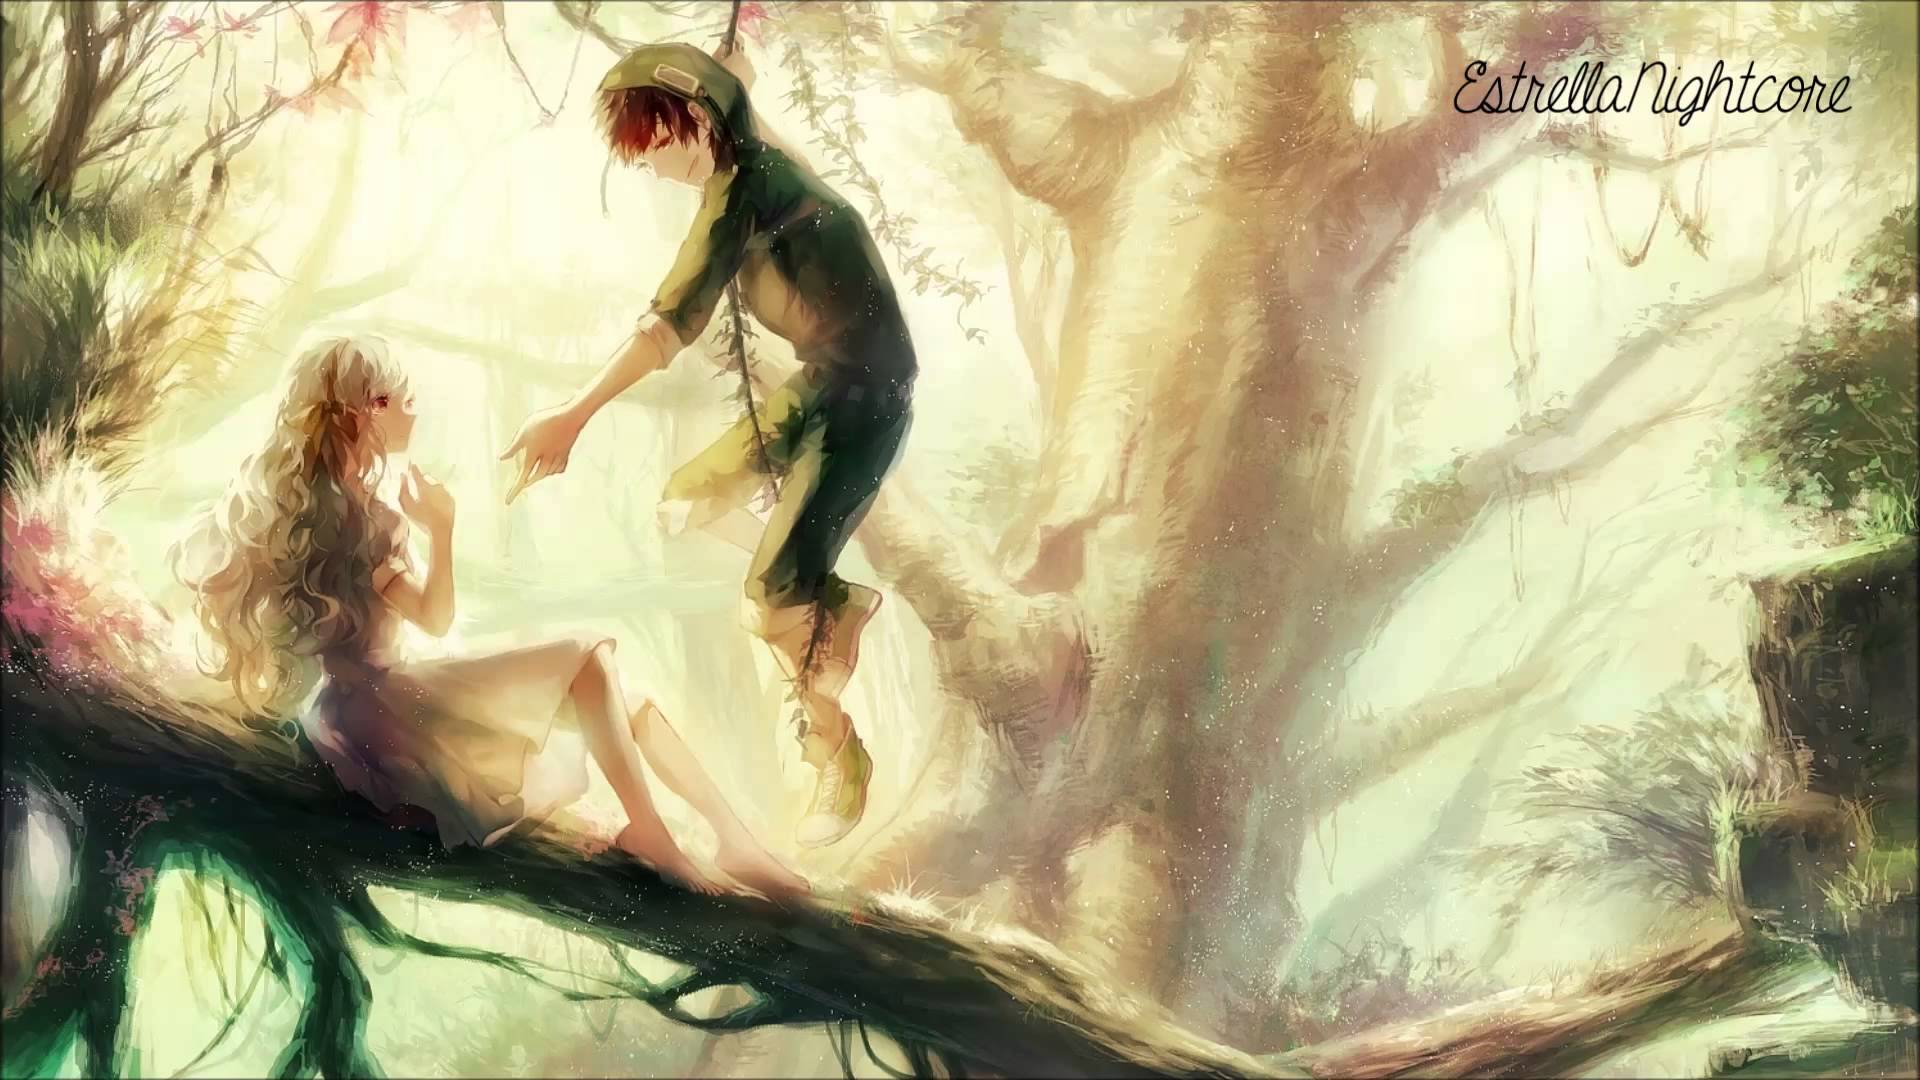 Человек стоит под деревом. Девушка в лесу арт. Девушка дерево арт. Девочка в лесу арт. Парень на дереве арт.